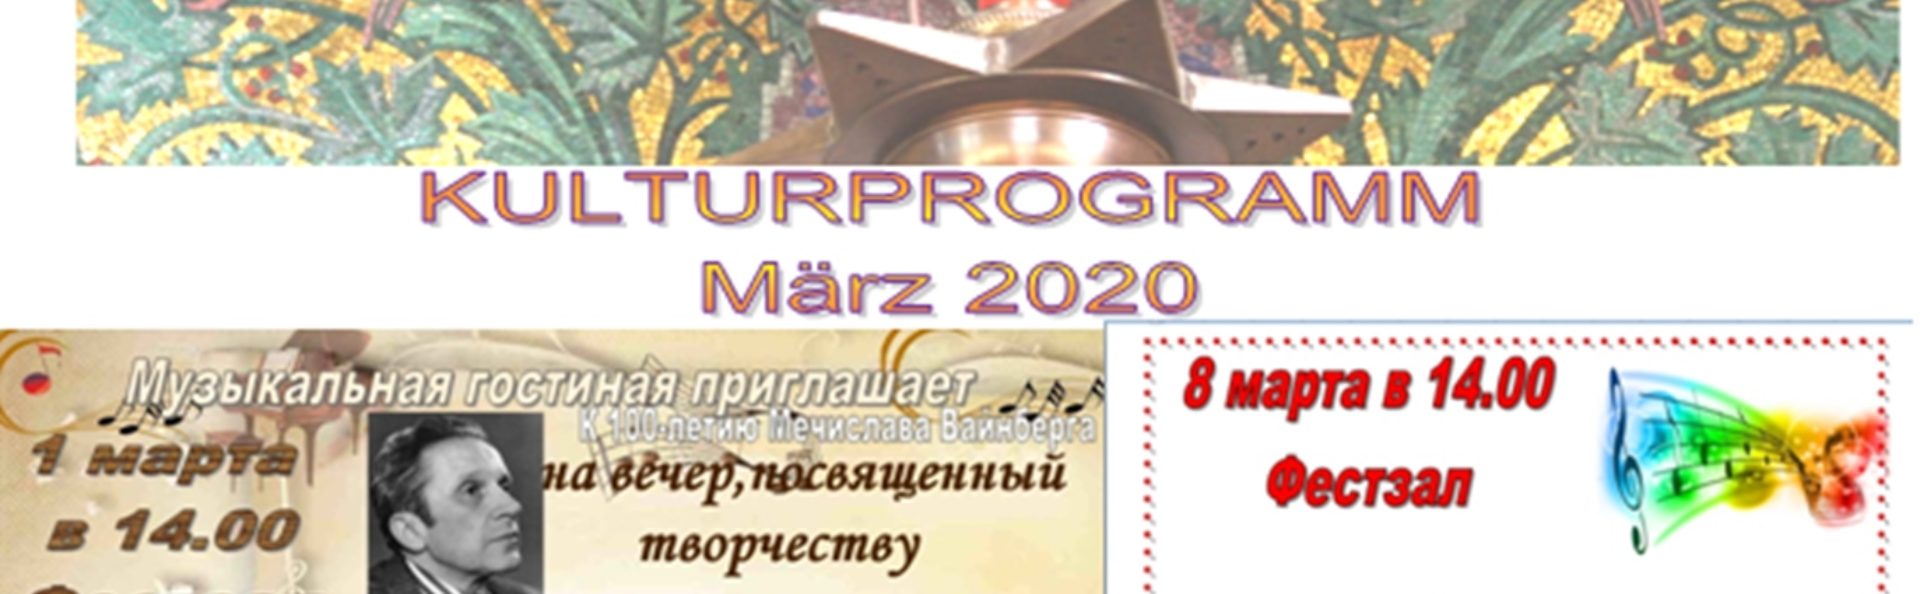 Kulturprogramm März 2020